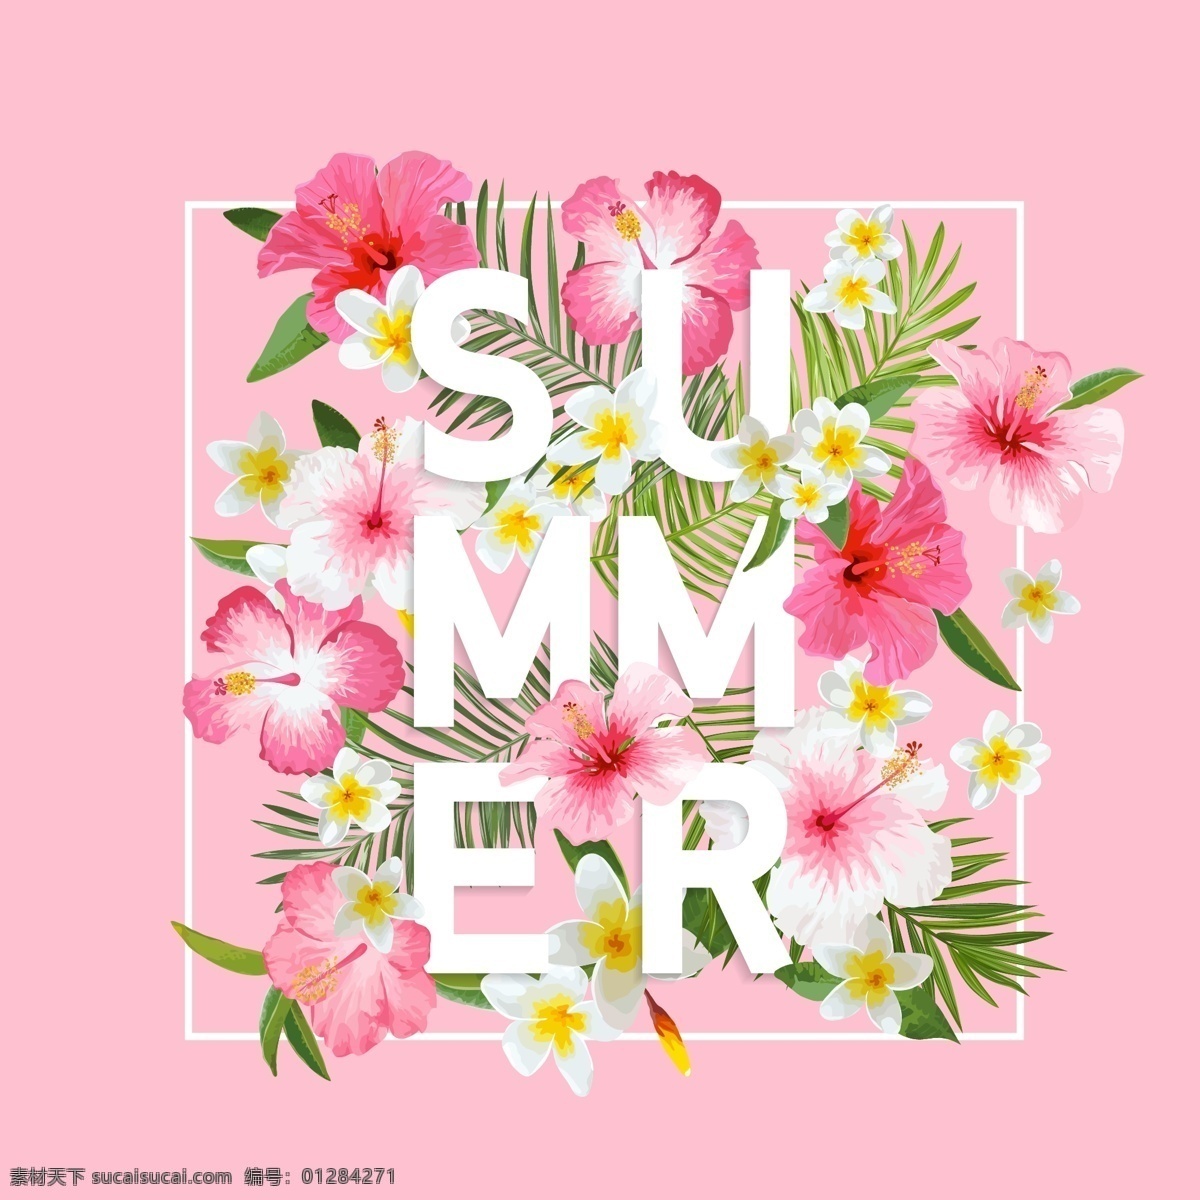 粉色 春夏 花卉 海报 矢量 鲜花 桃花 合成字体 创意 穿插 花朵 小清新 卡通 填充 插画 背景 广告 包装 印刷 夏天